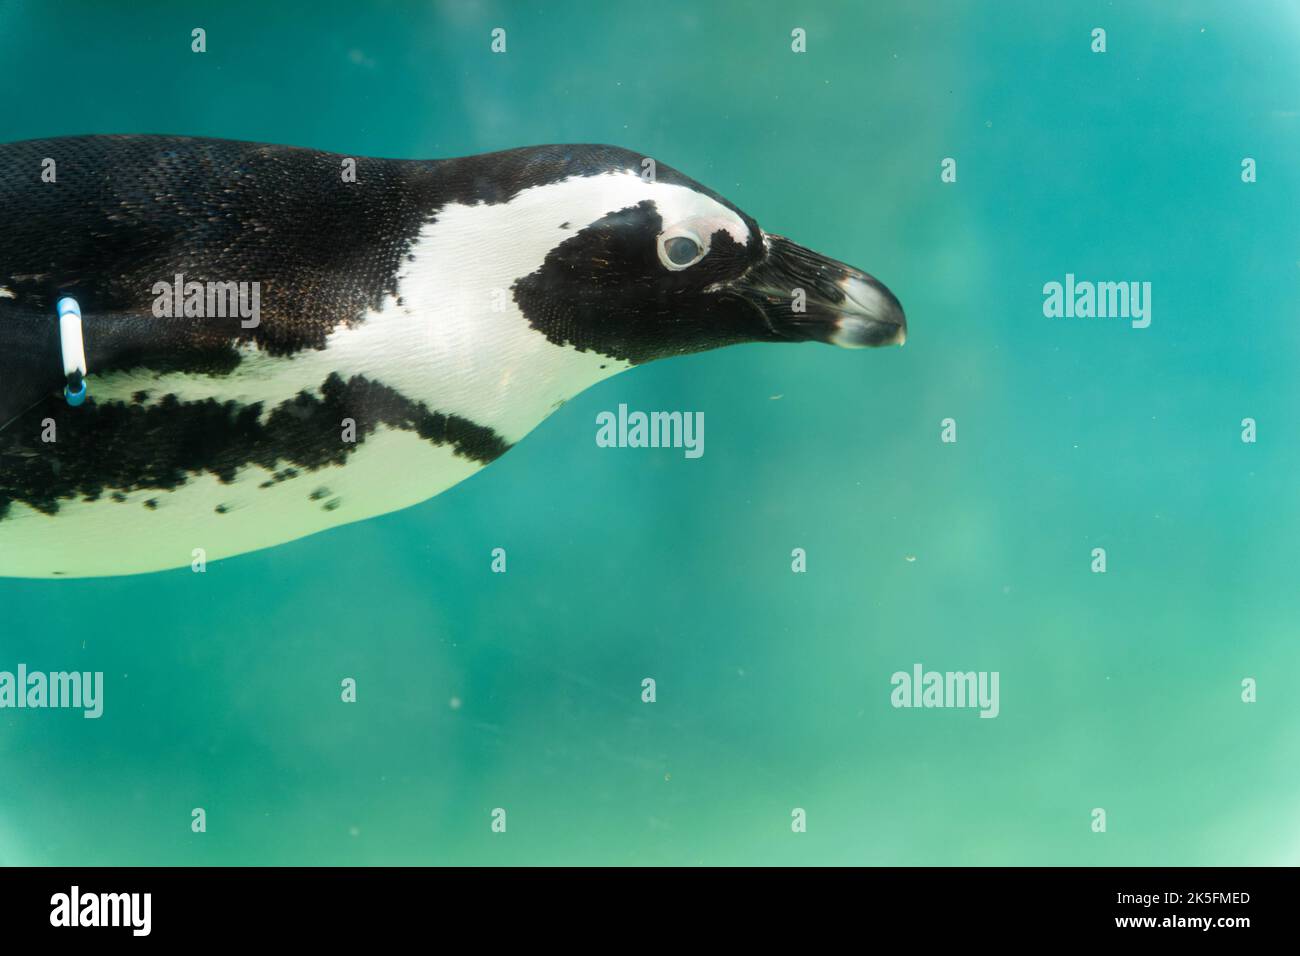 Pingouin africain (Spheniscus demersus), également connu sous le nom de pingouin du Cap ou pingouin sud-africain Banque D'Images